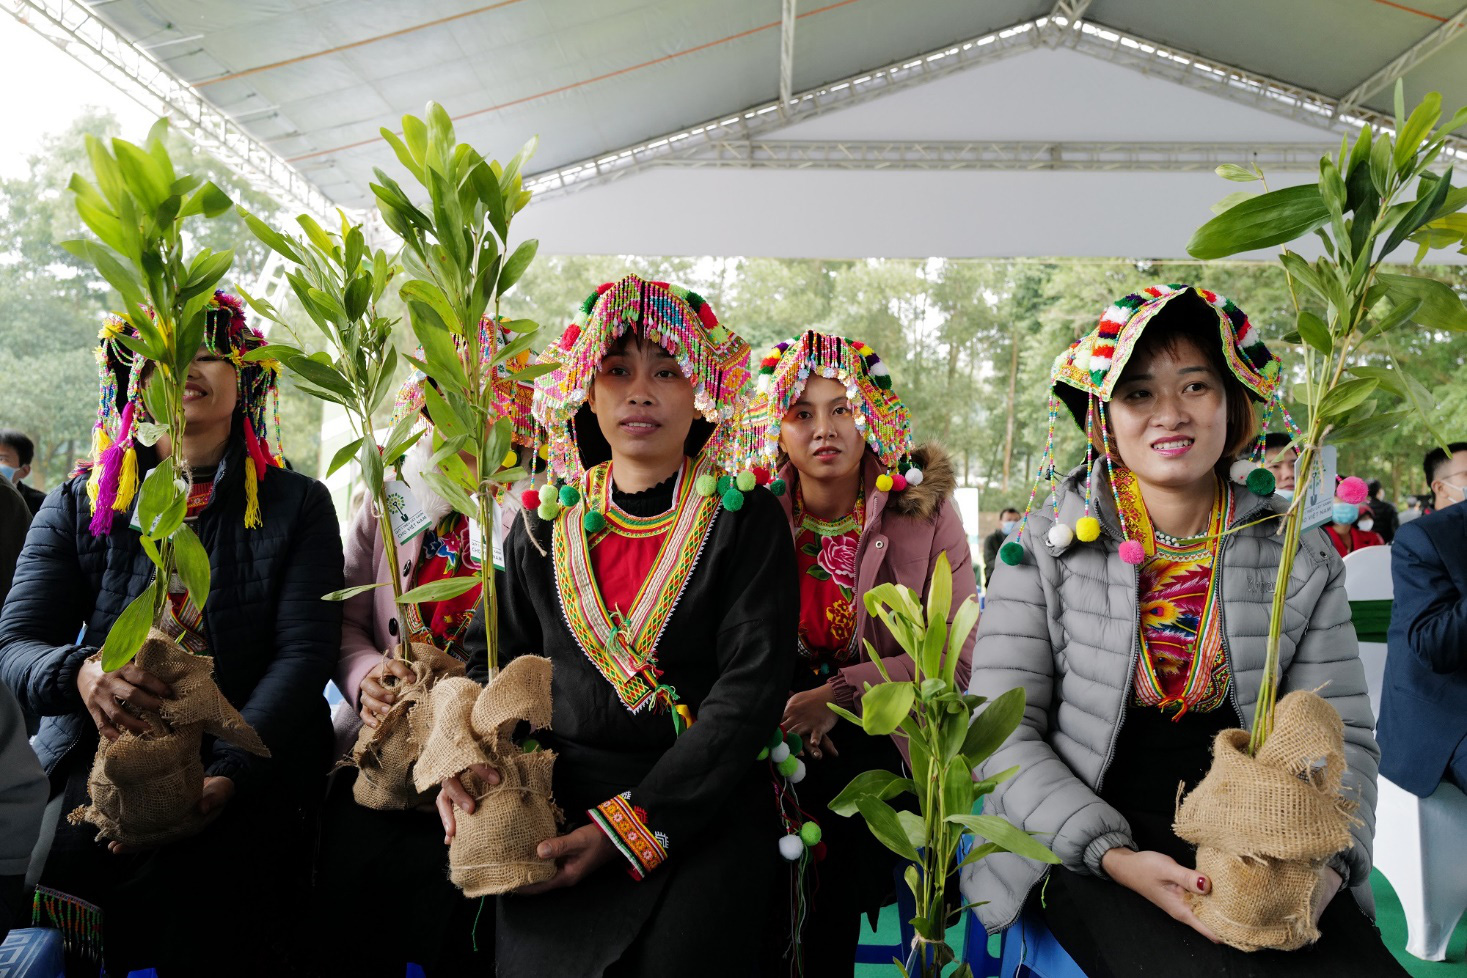 Trao tặng thêm 270.000 cây xanh, Vinamilk và Quỹ 1 triệu cây xanh cho Việt Nam chính thức hoàn thành mục tiêu đề ra - Ảnh 4.